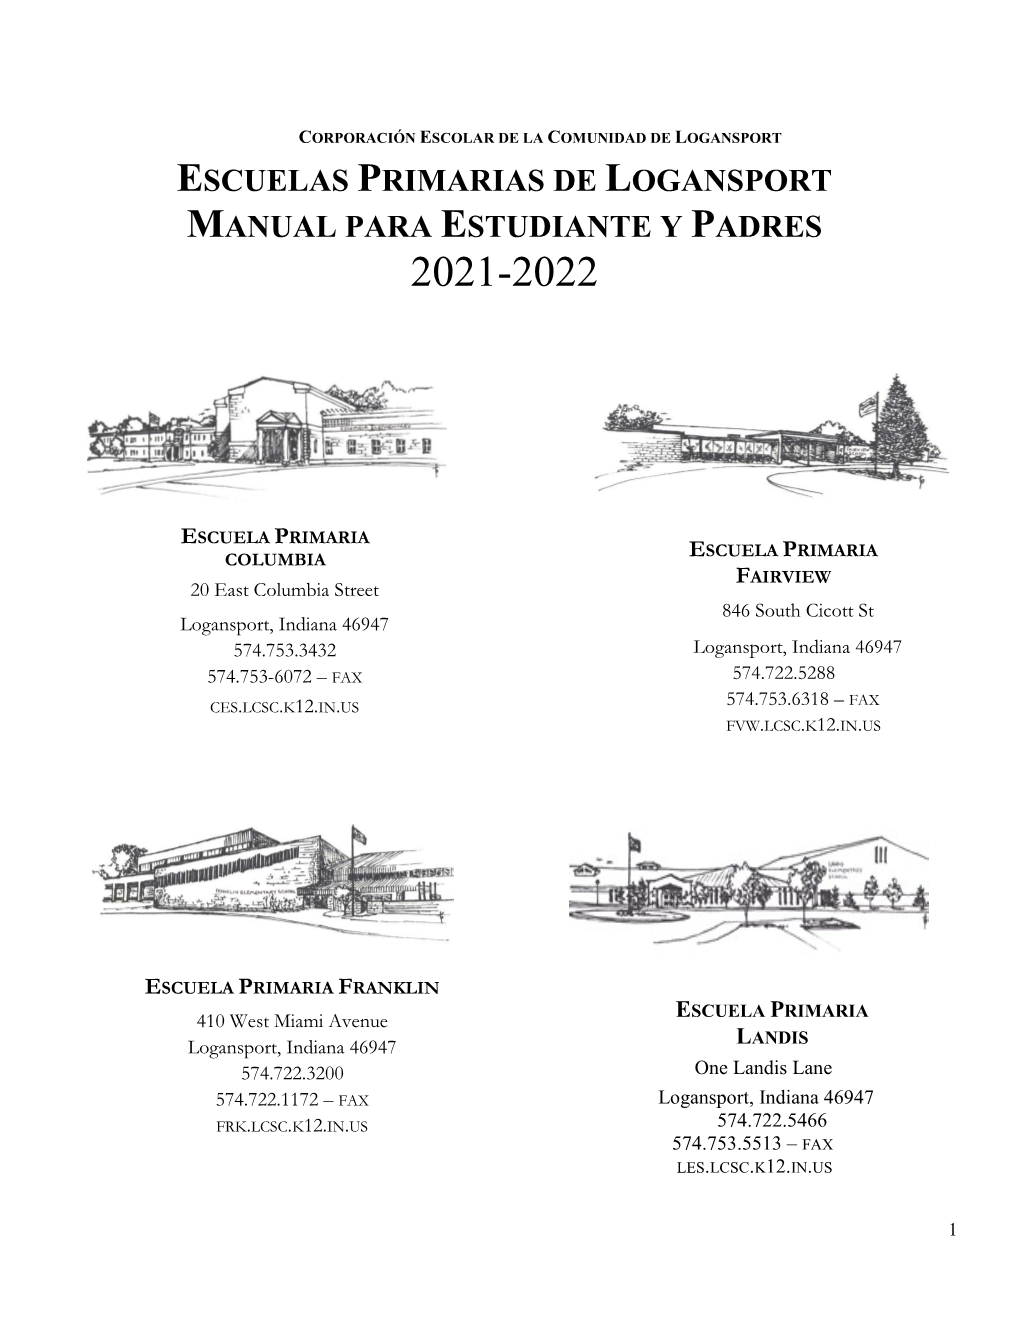 Escuelas Primarias De Logansport Manual Para Estudiante Y Padres 2021-2022